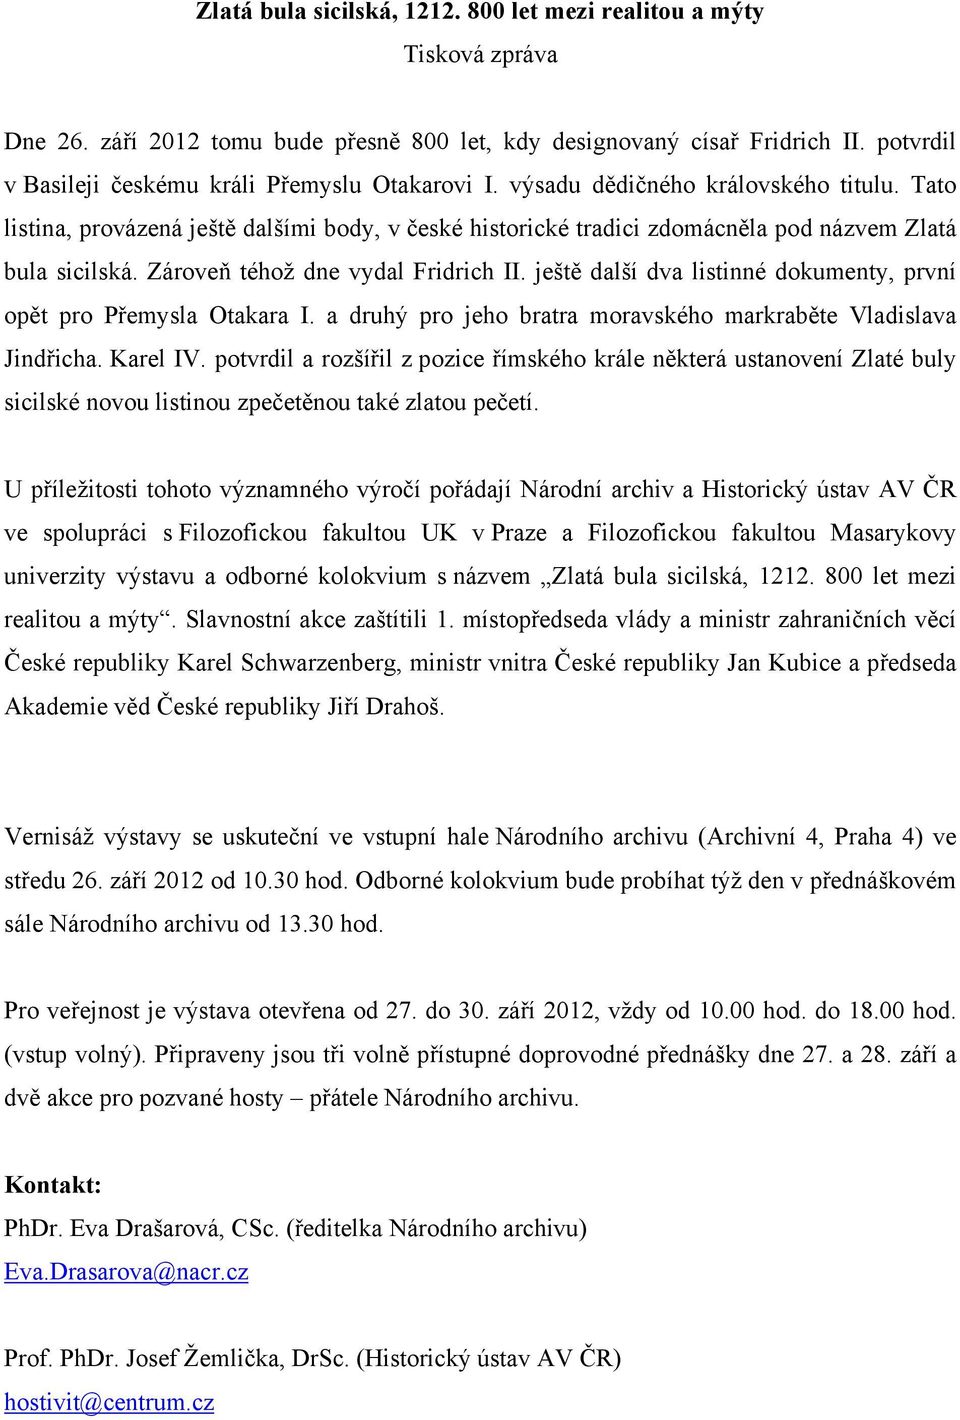 Tato listina, provázená ještě dalšími body, v české historické tradici zdomácněla pod názvem Zlatá bula sicilská. Zároveň téhož dne vydal Fridrich II.